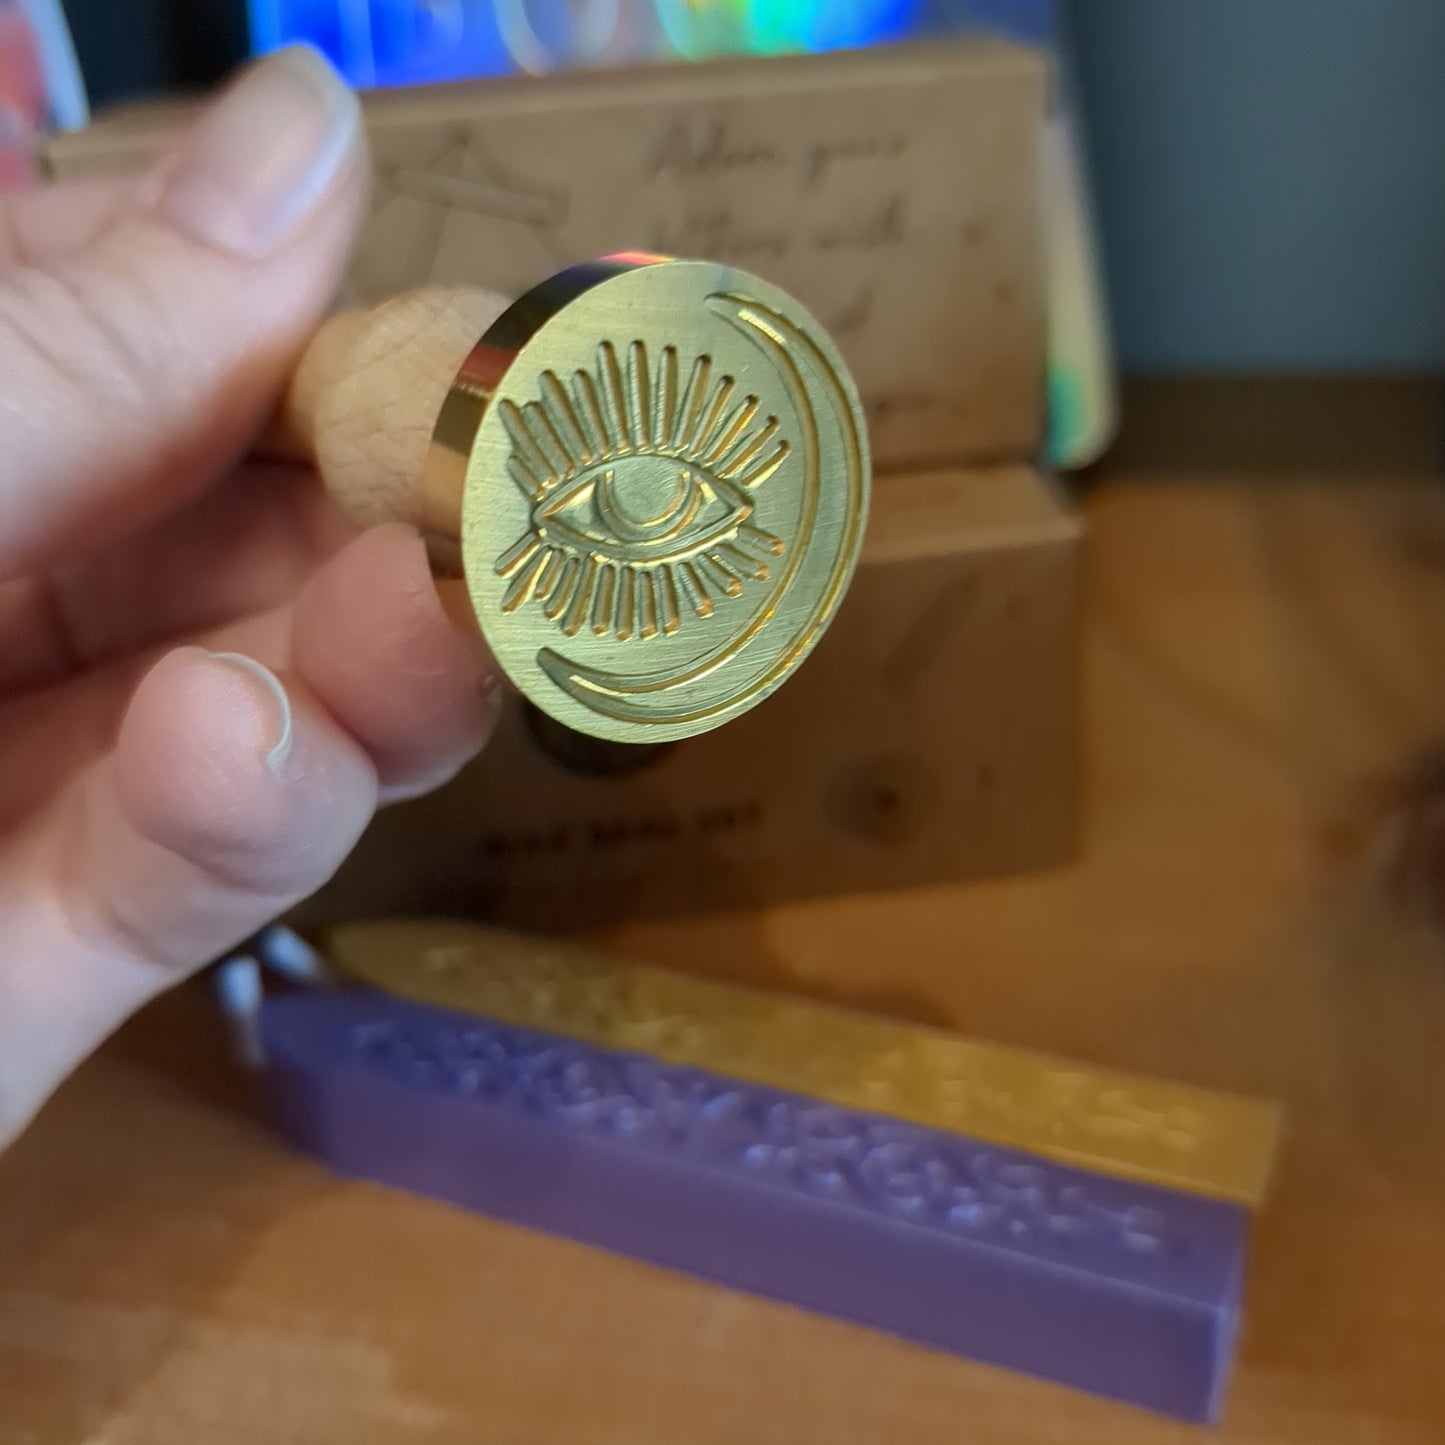 Lunar insight wax seal set